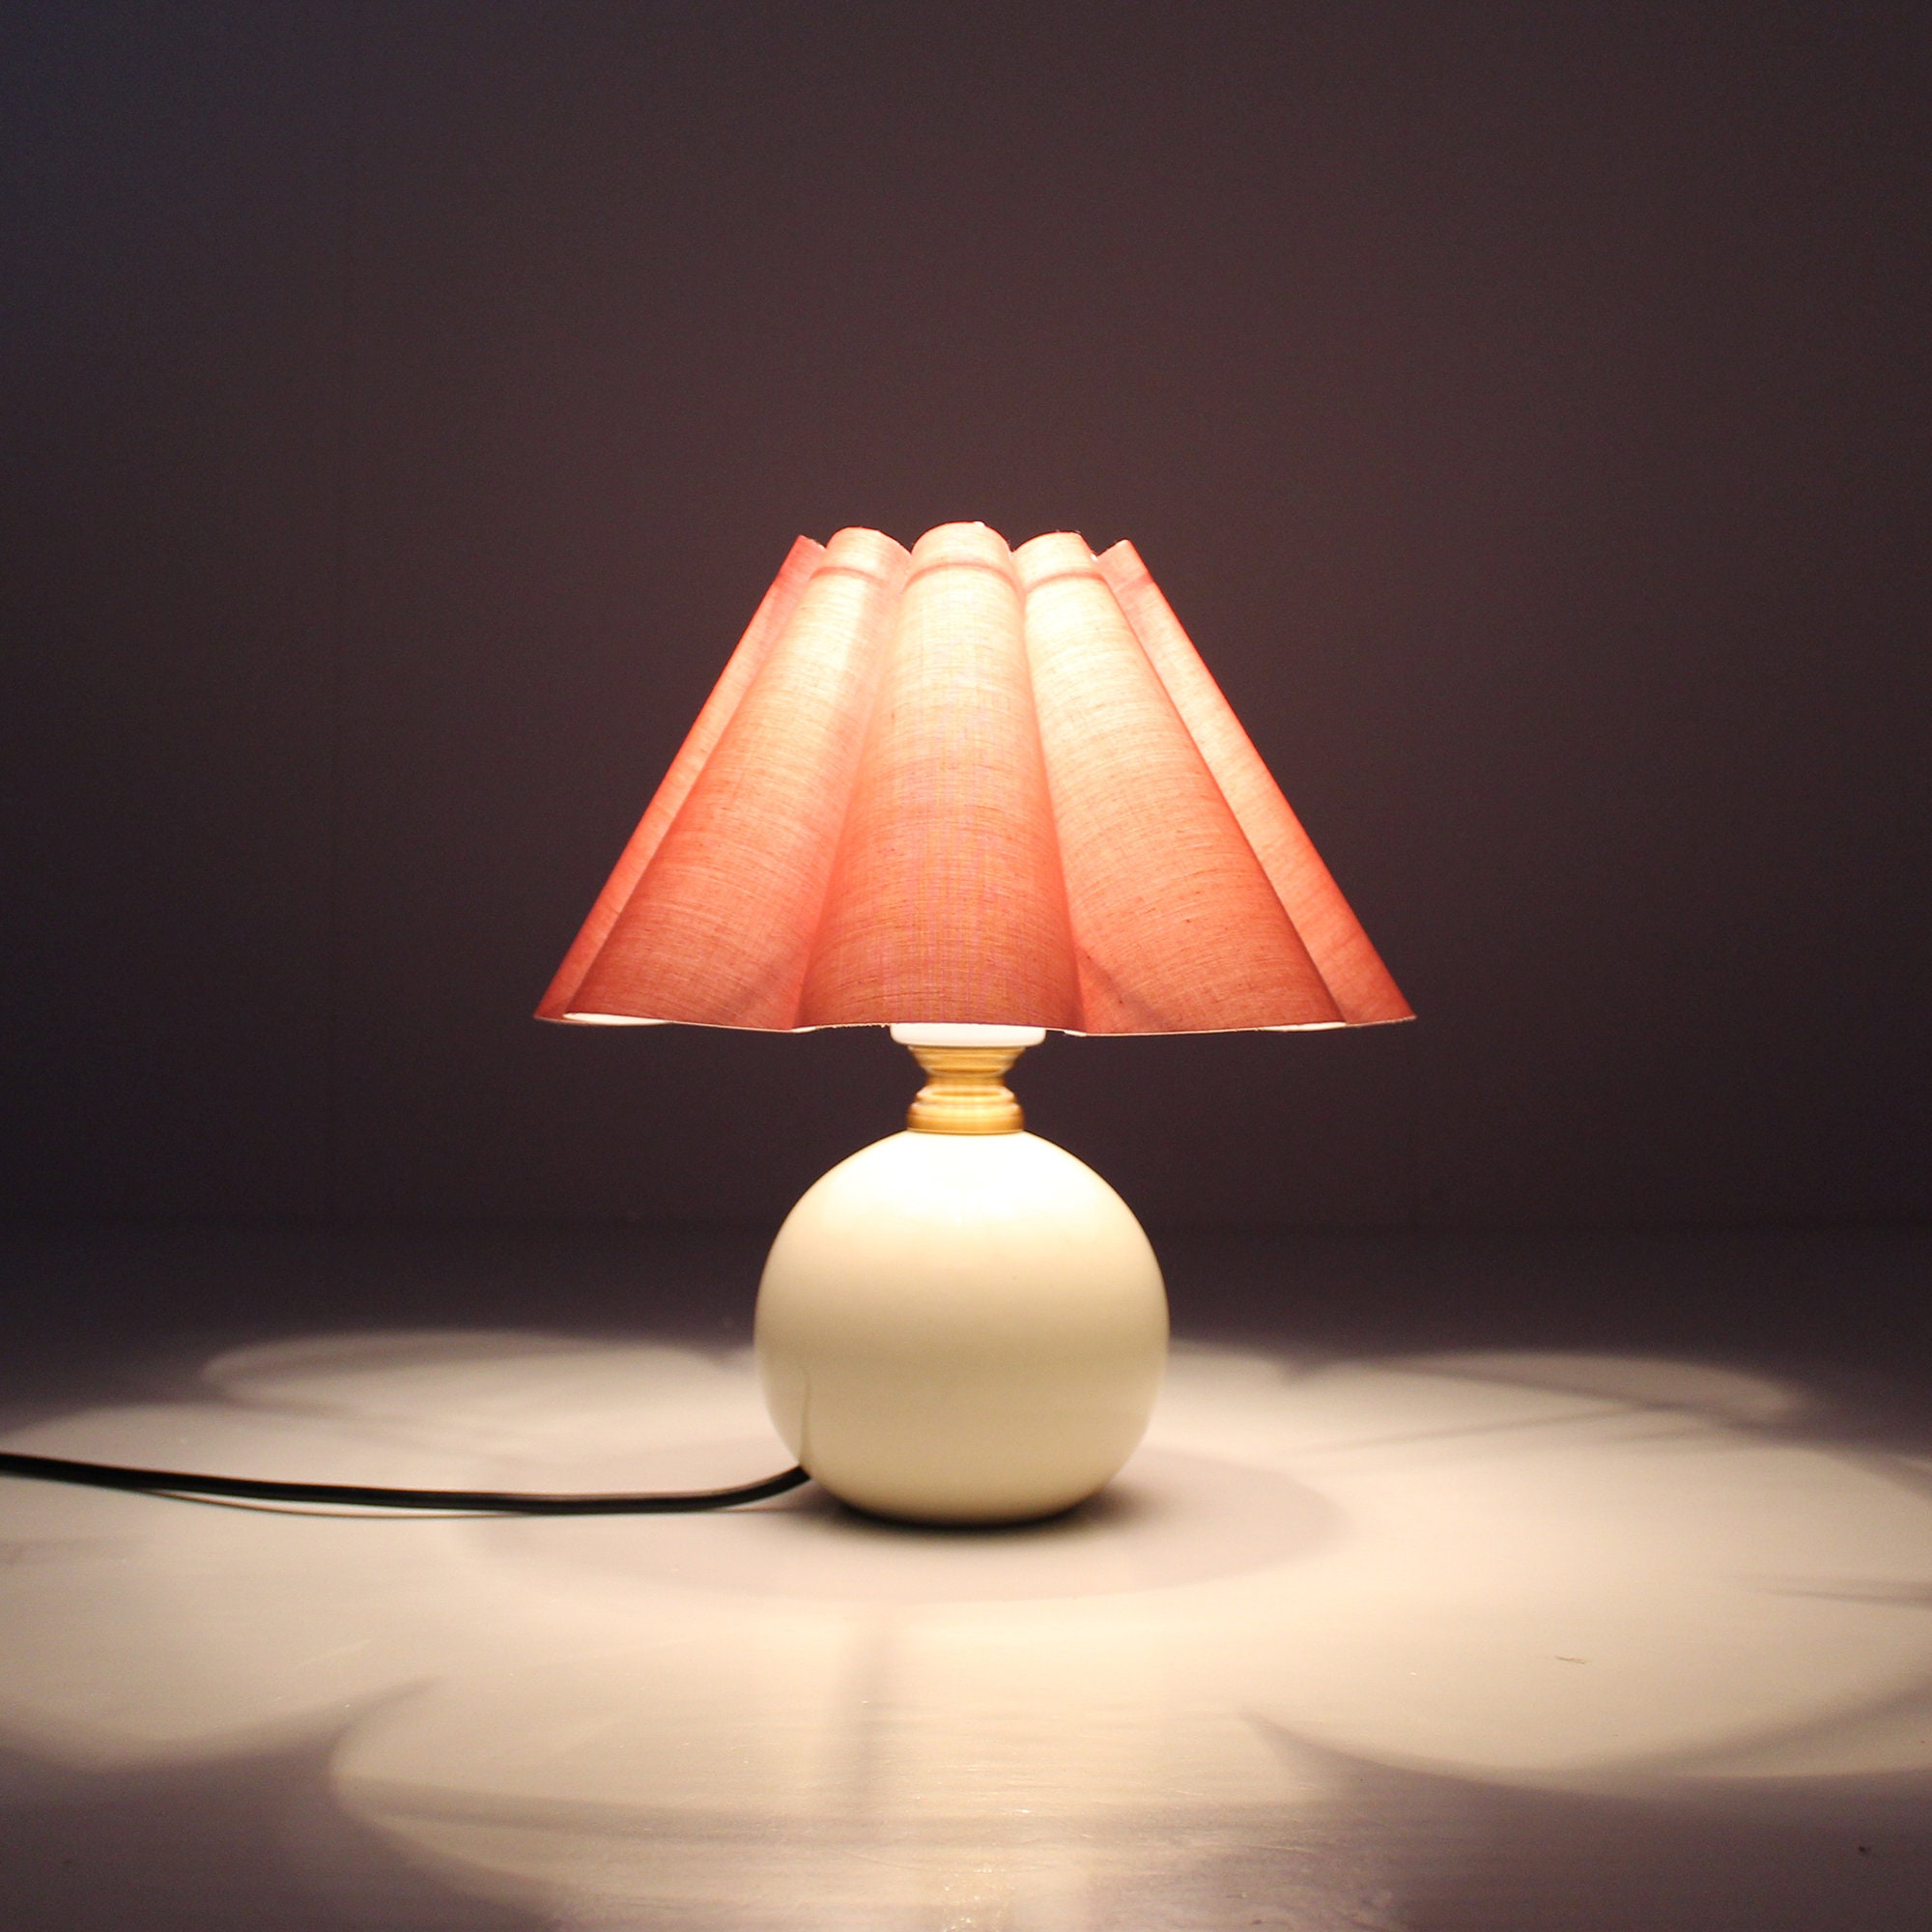 Duzy Diy Rose Romantique Jupe Chaude Forme Lampe de Chevet en Céramique Pour L'ameublement, 110-240V